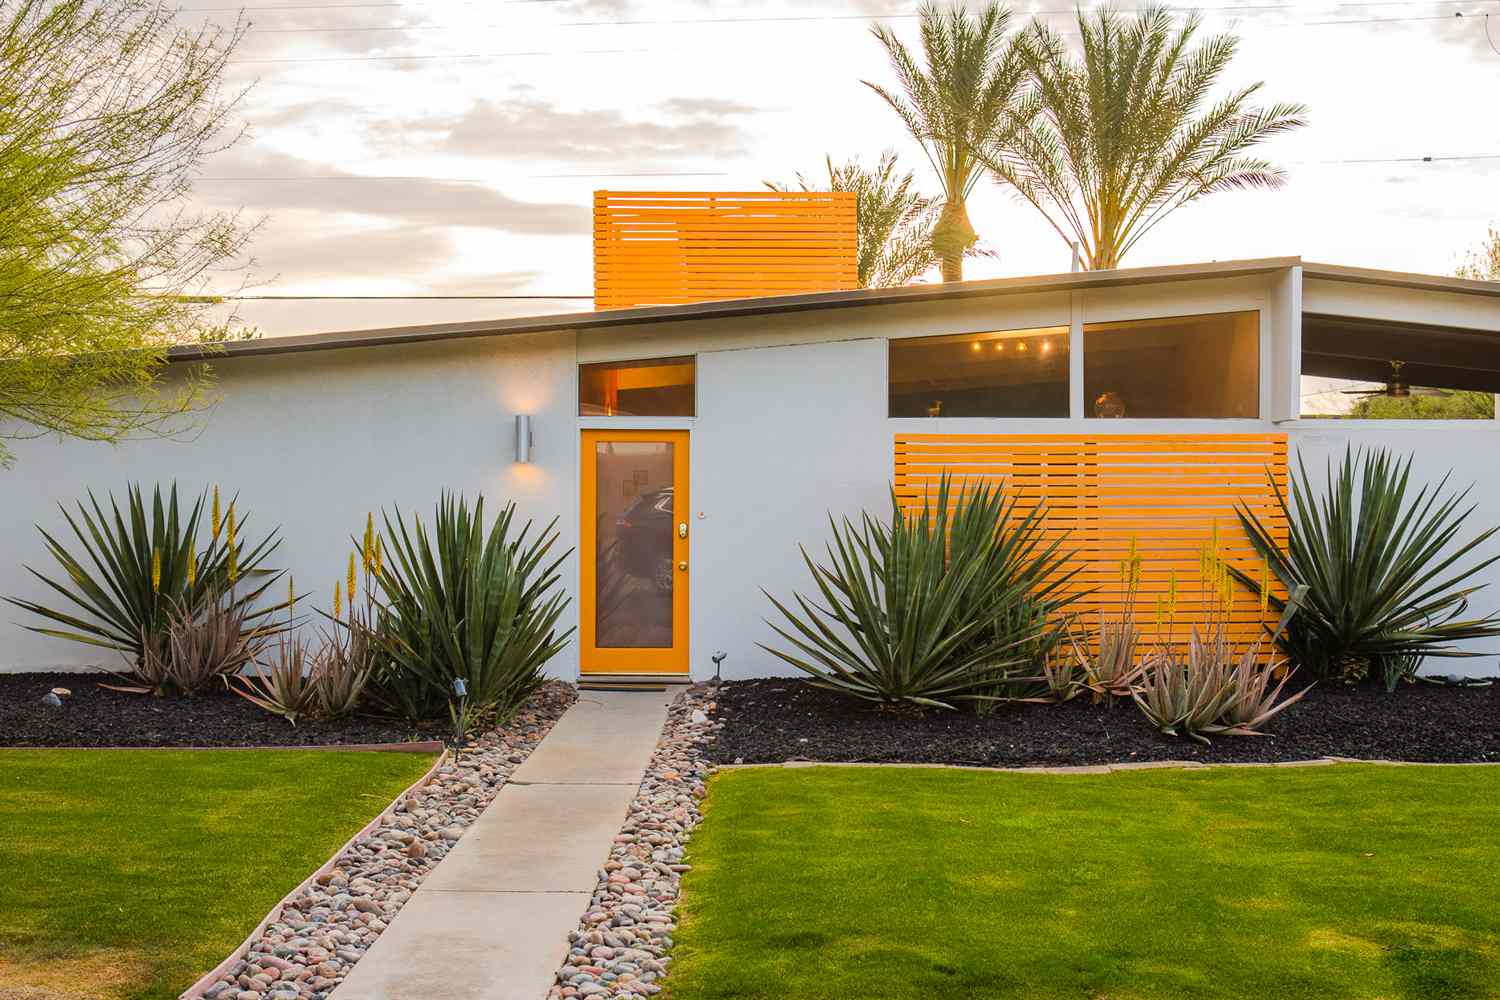 Modernes Haus mit schlanken Linien, orange lackierten Türen und Trennwänden